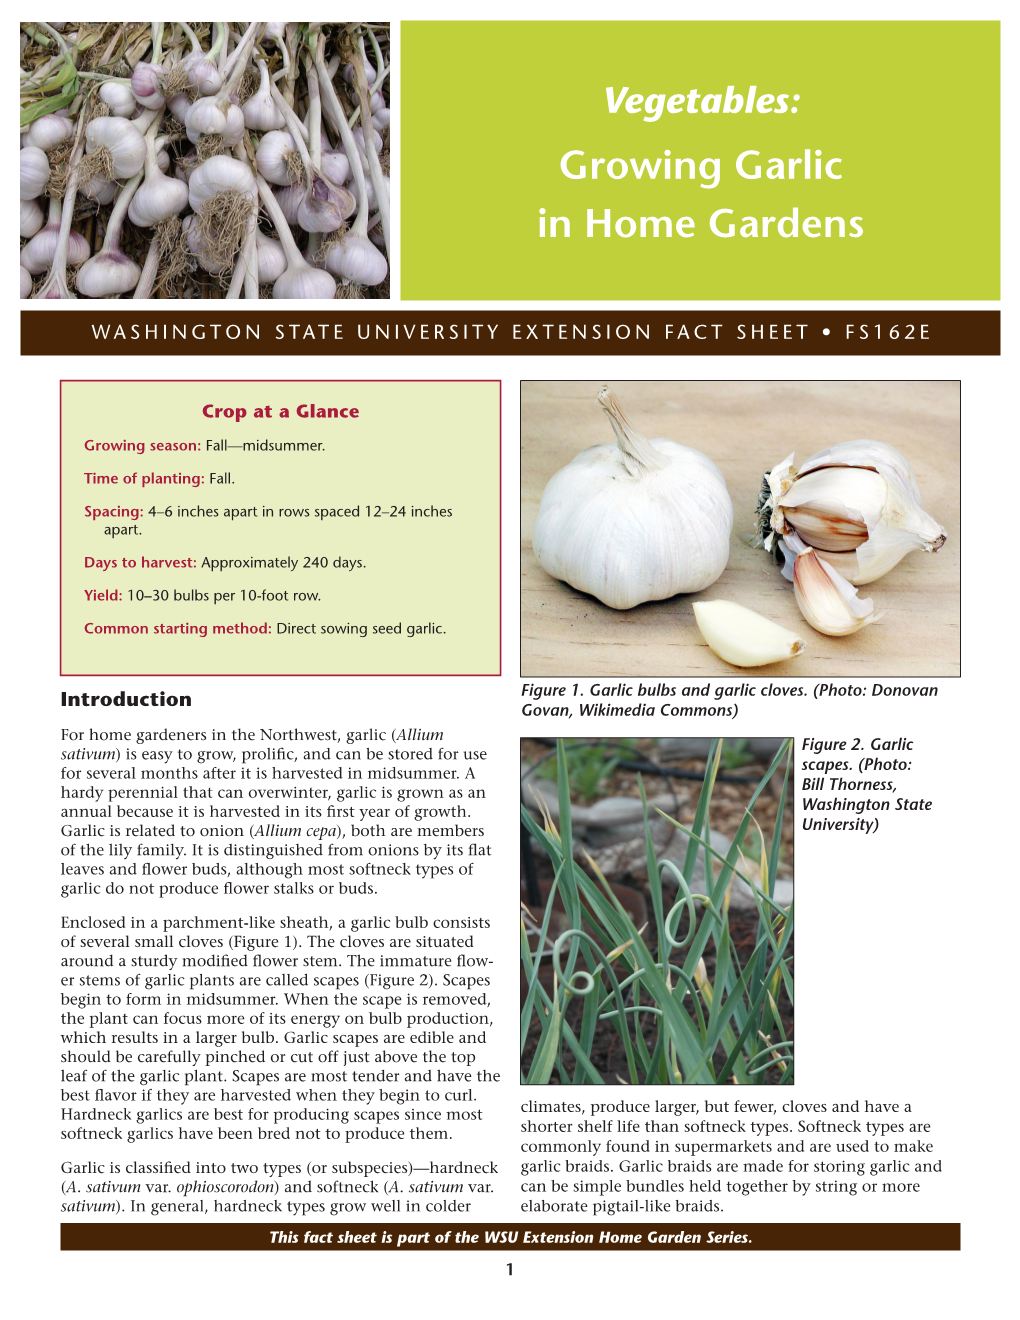 Growing Garlic in Home Gardens